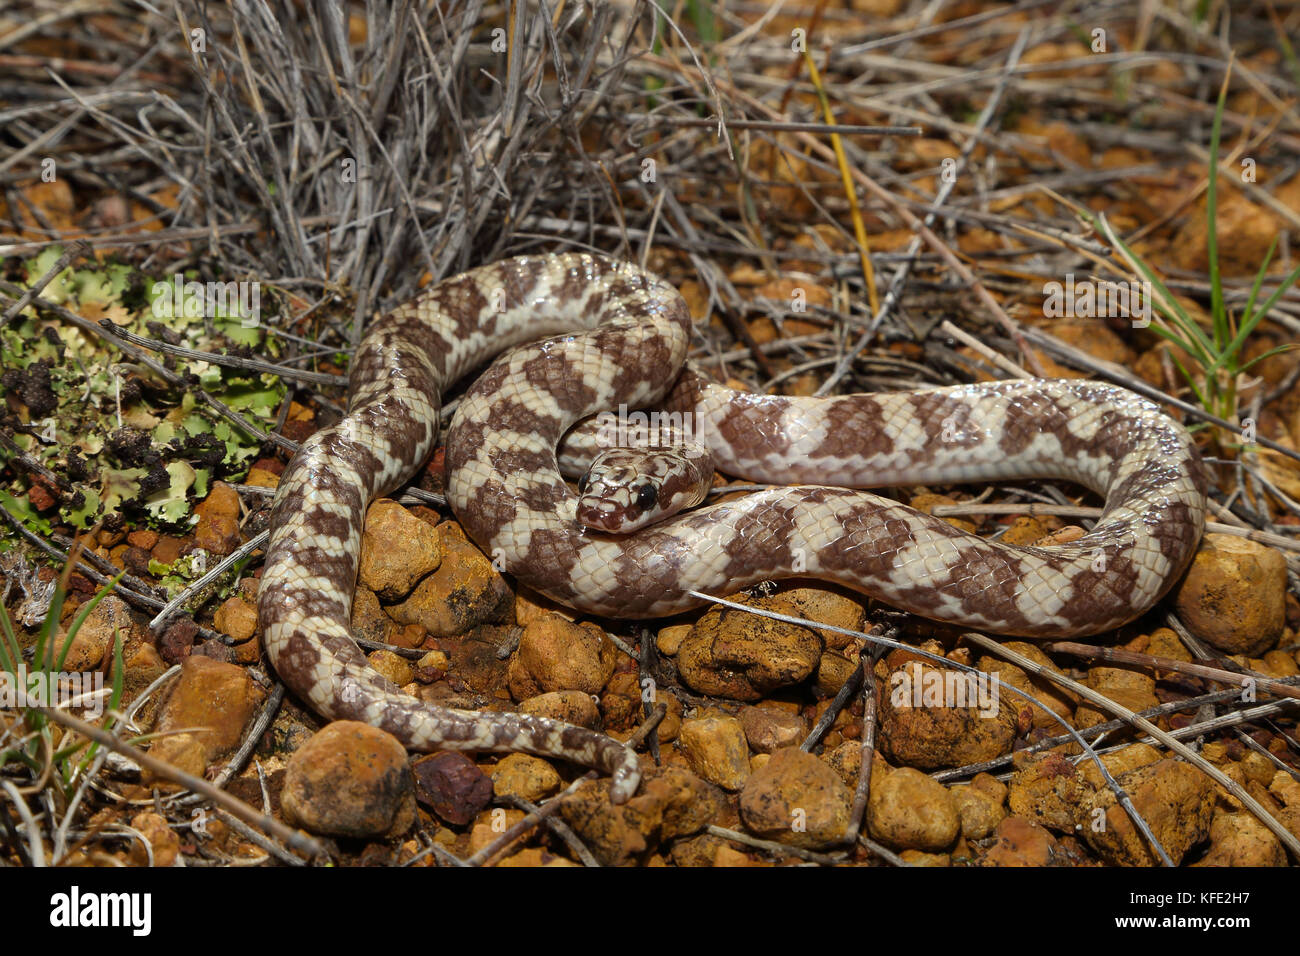 Serpent de Rosen (Suta fasciata) de couleur claire mue enroulé sur sol pierreux. Il mesure environ 38 cm de long. Yalgoo, région du Midwest, Australie occidentale, Australie Banque D'Images